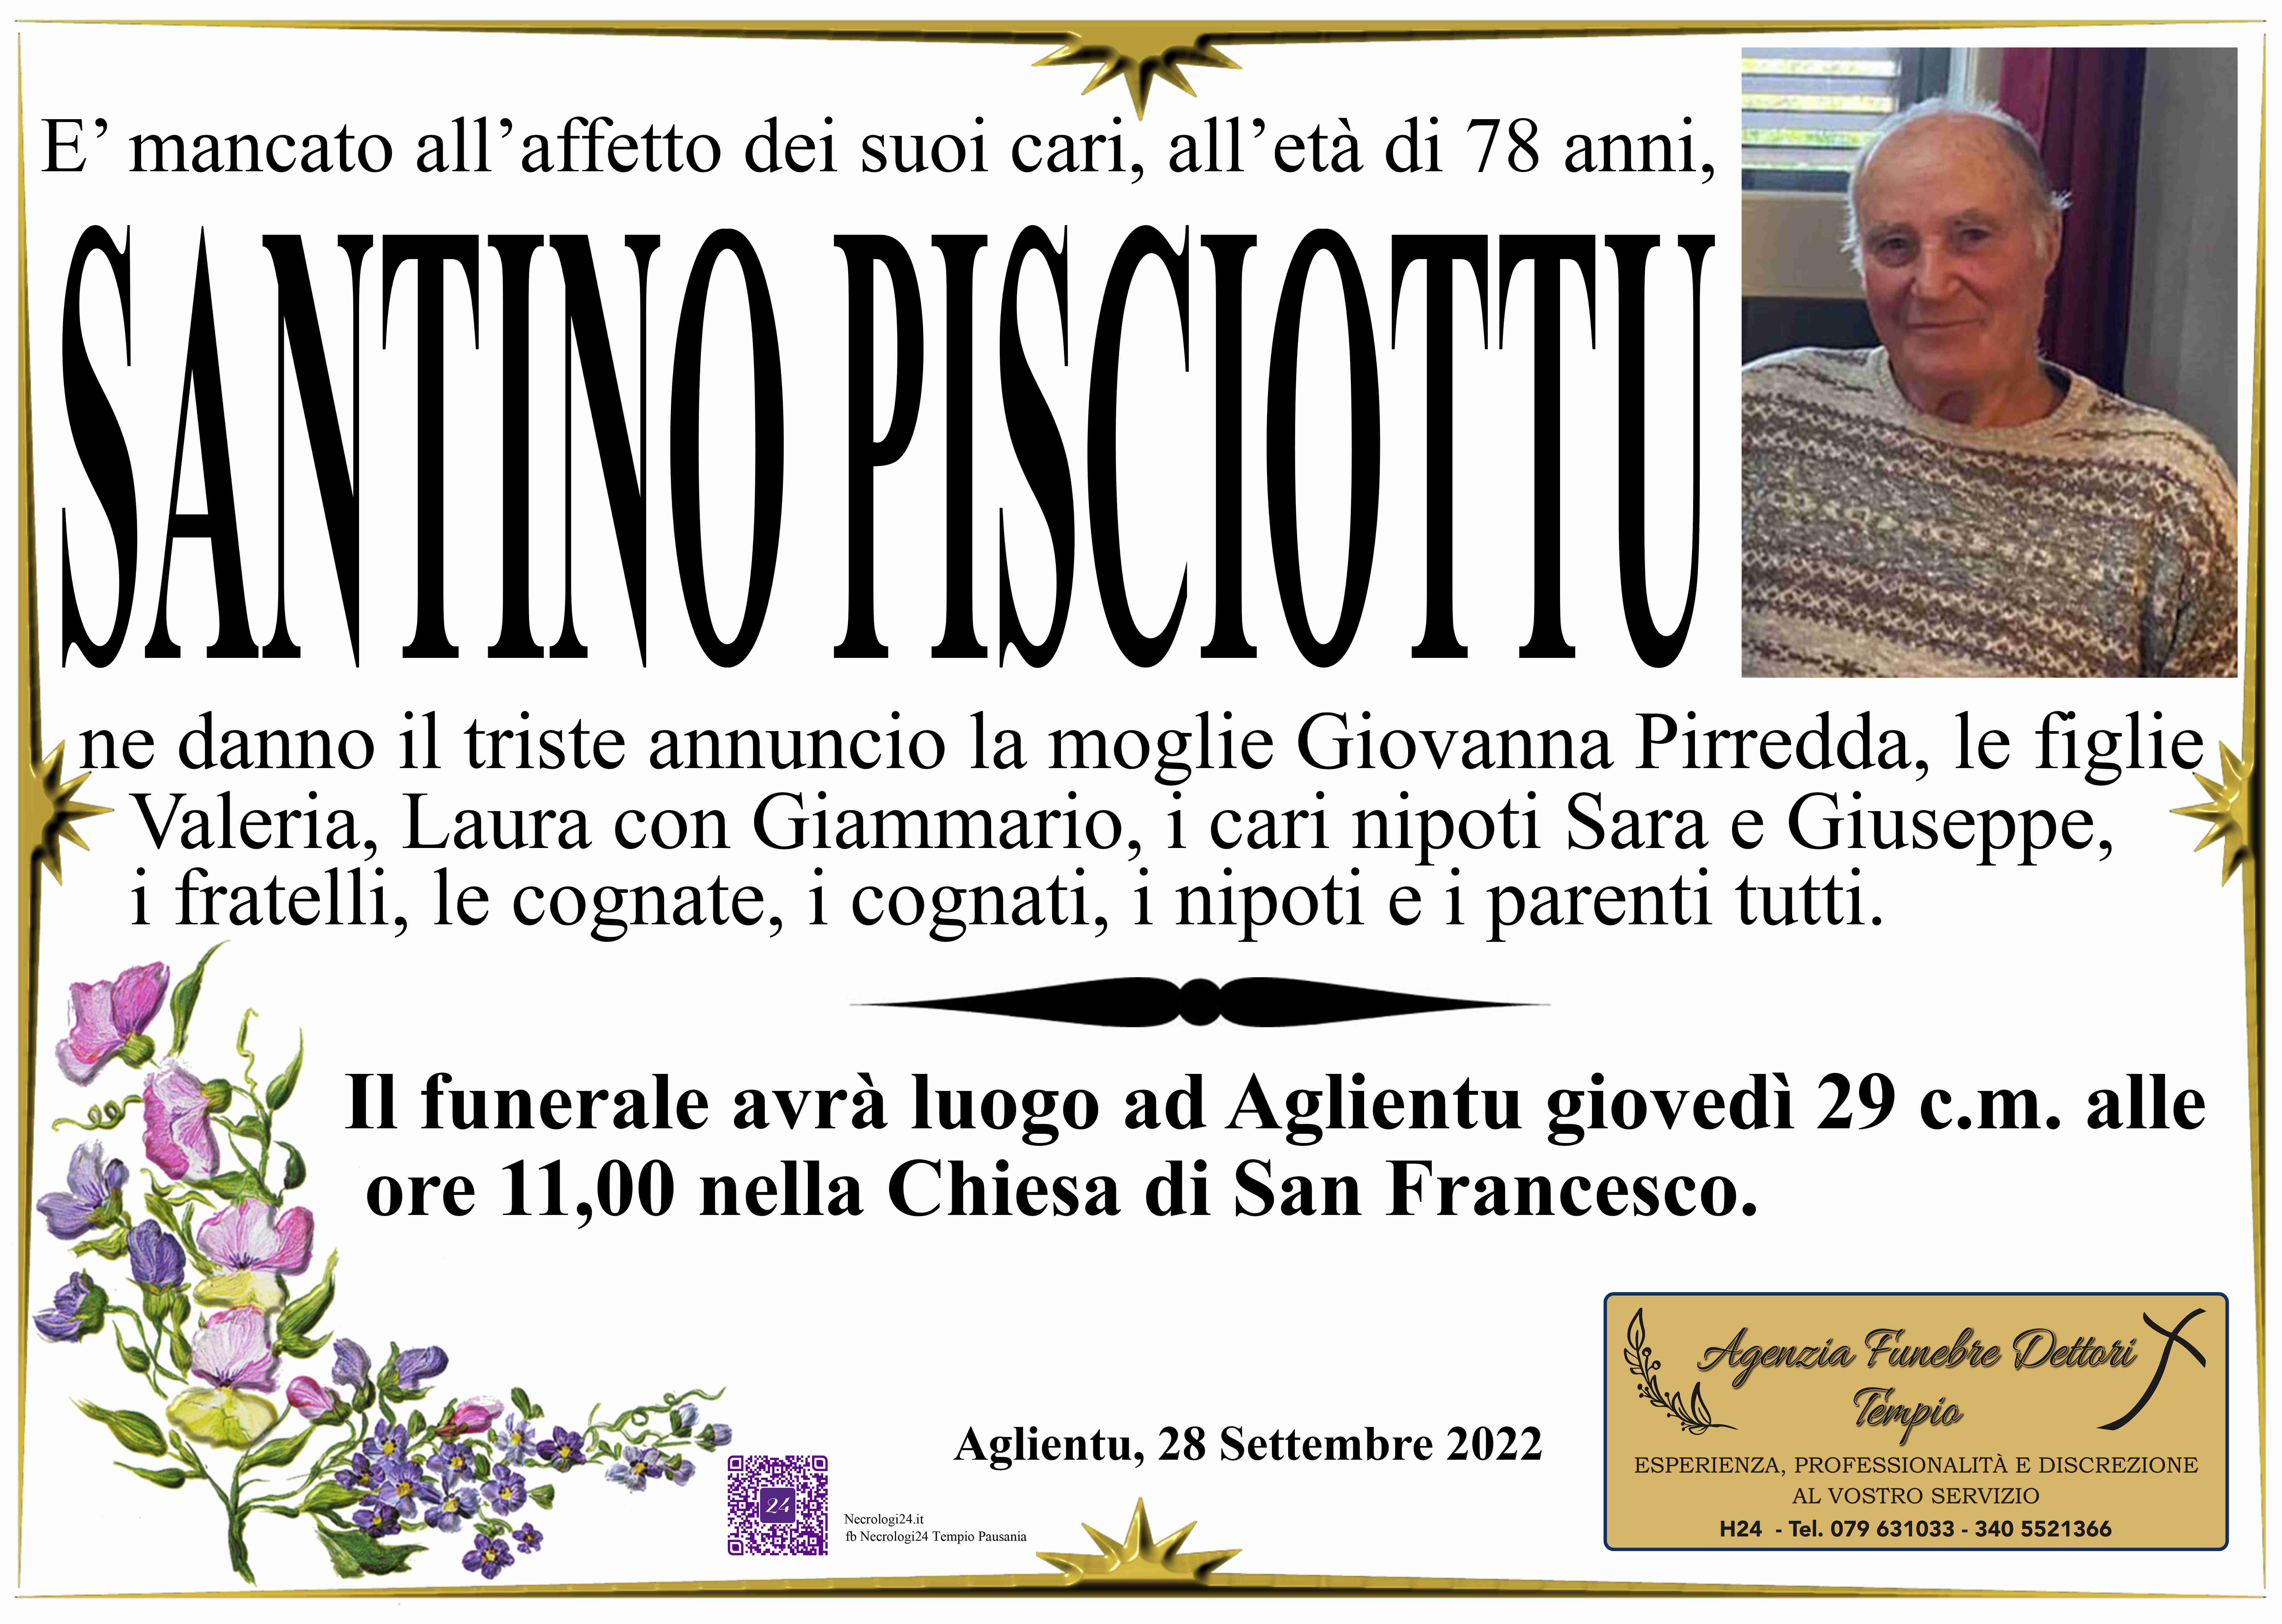 Santino Vittorio Pisciottu